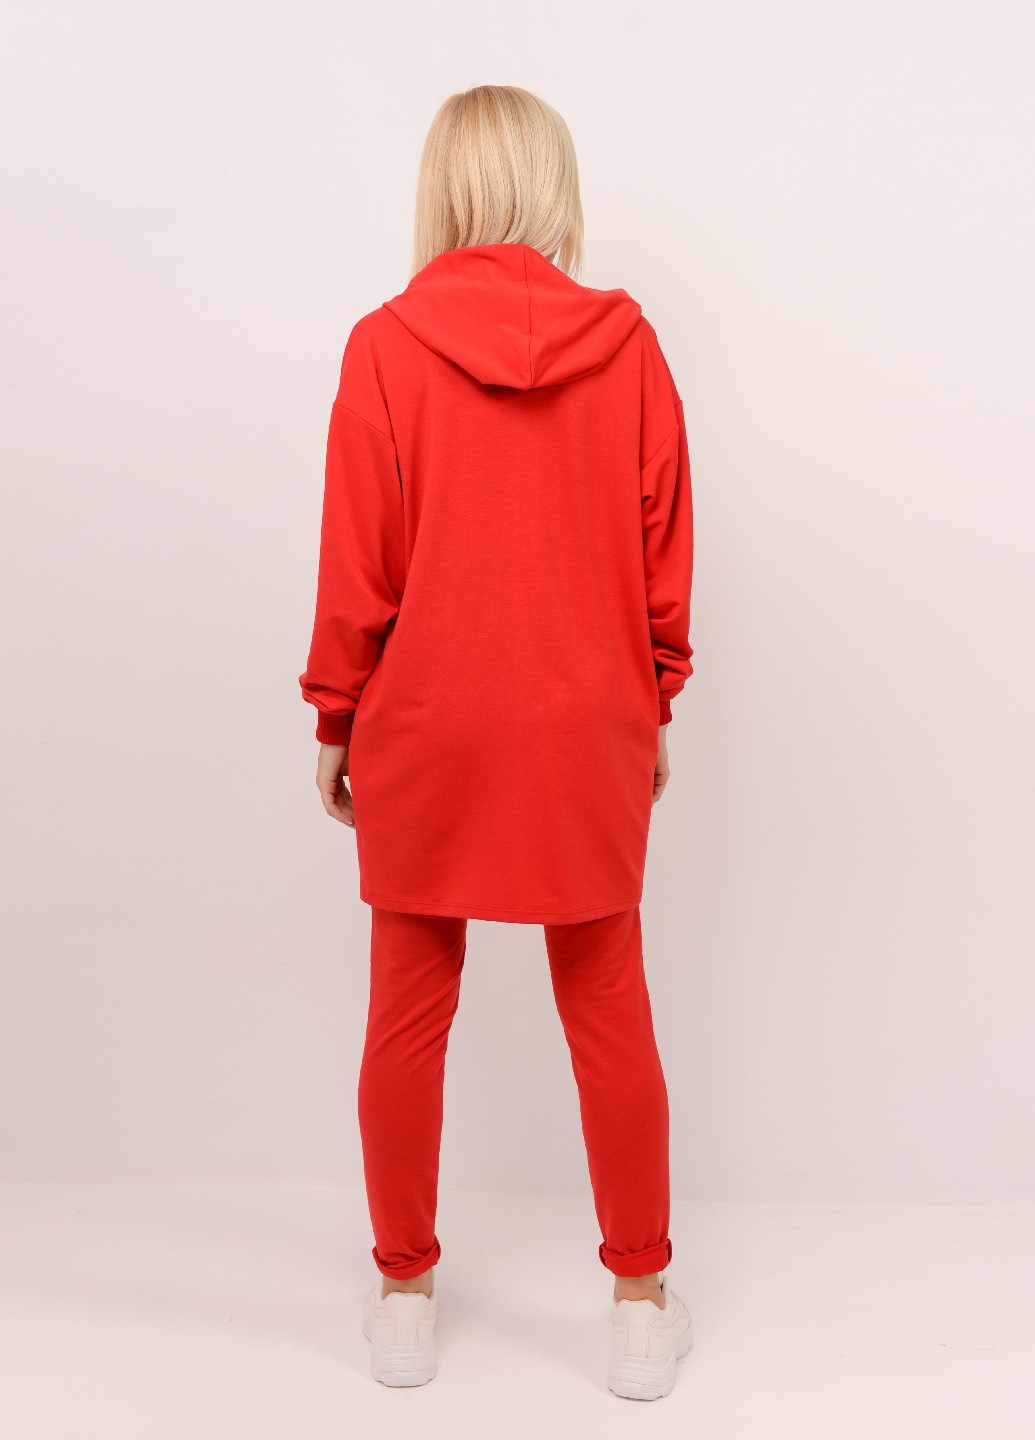 Женский спортивный костюм с удлиненной кофтой красный 02489 оптом